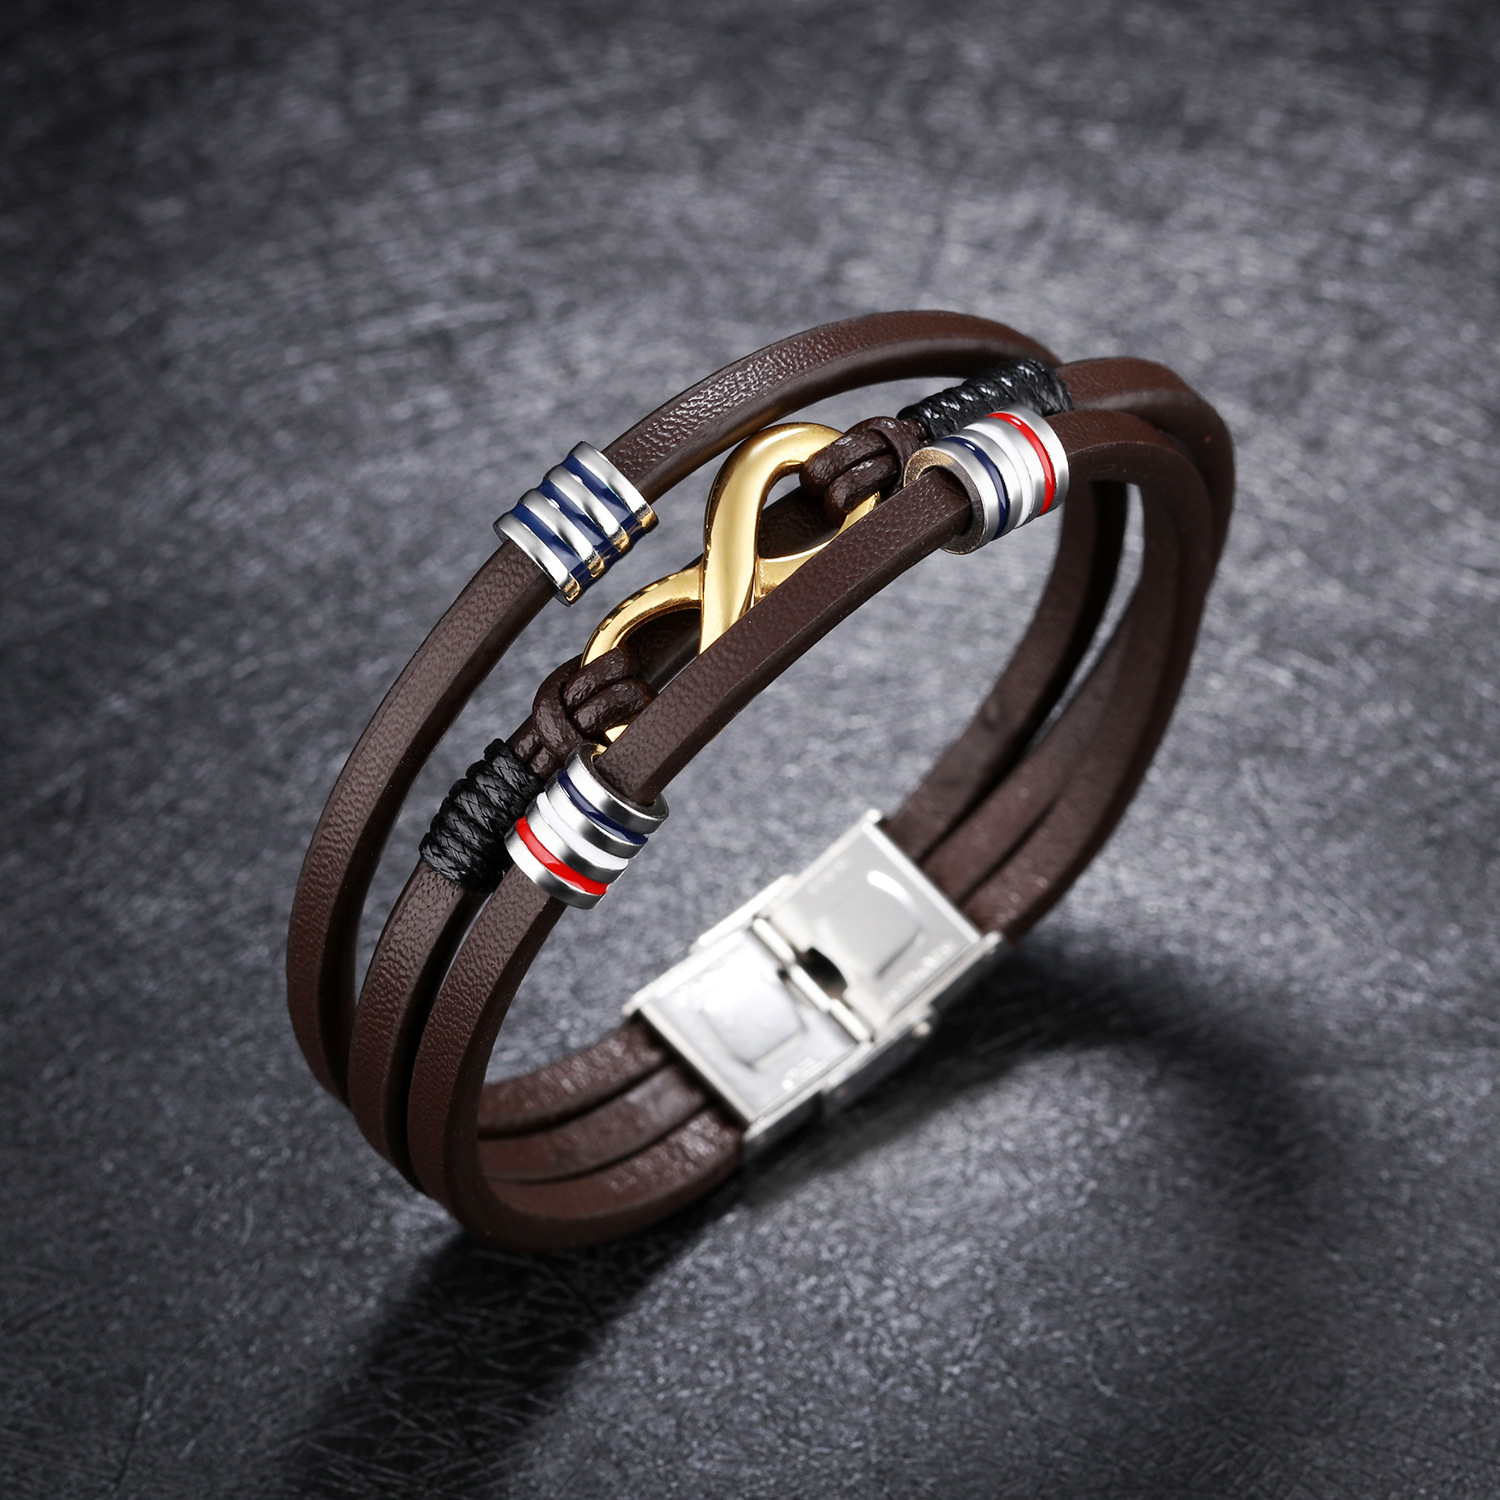 Leather bracelet leather bracelet - CJdropshipping